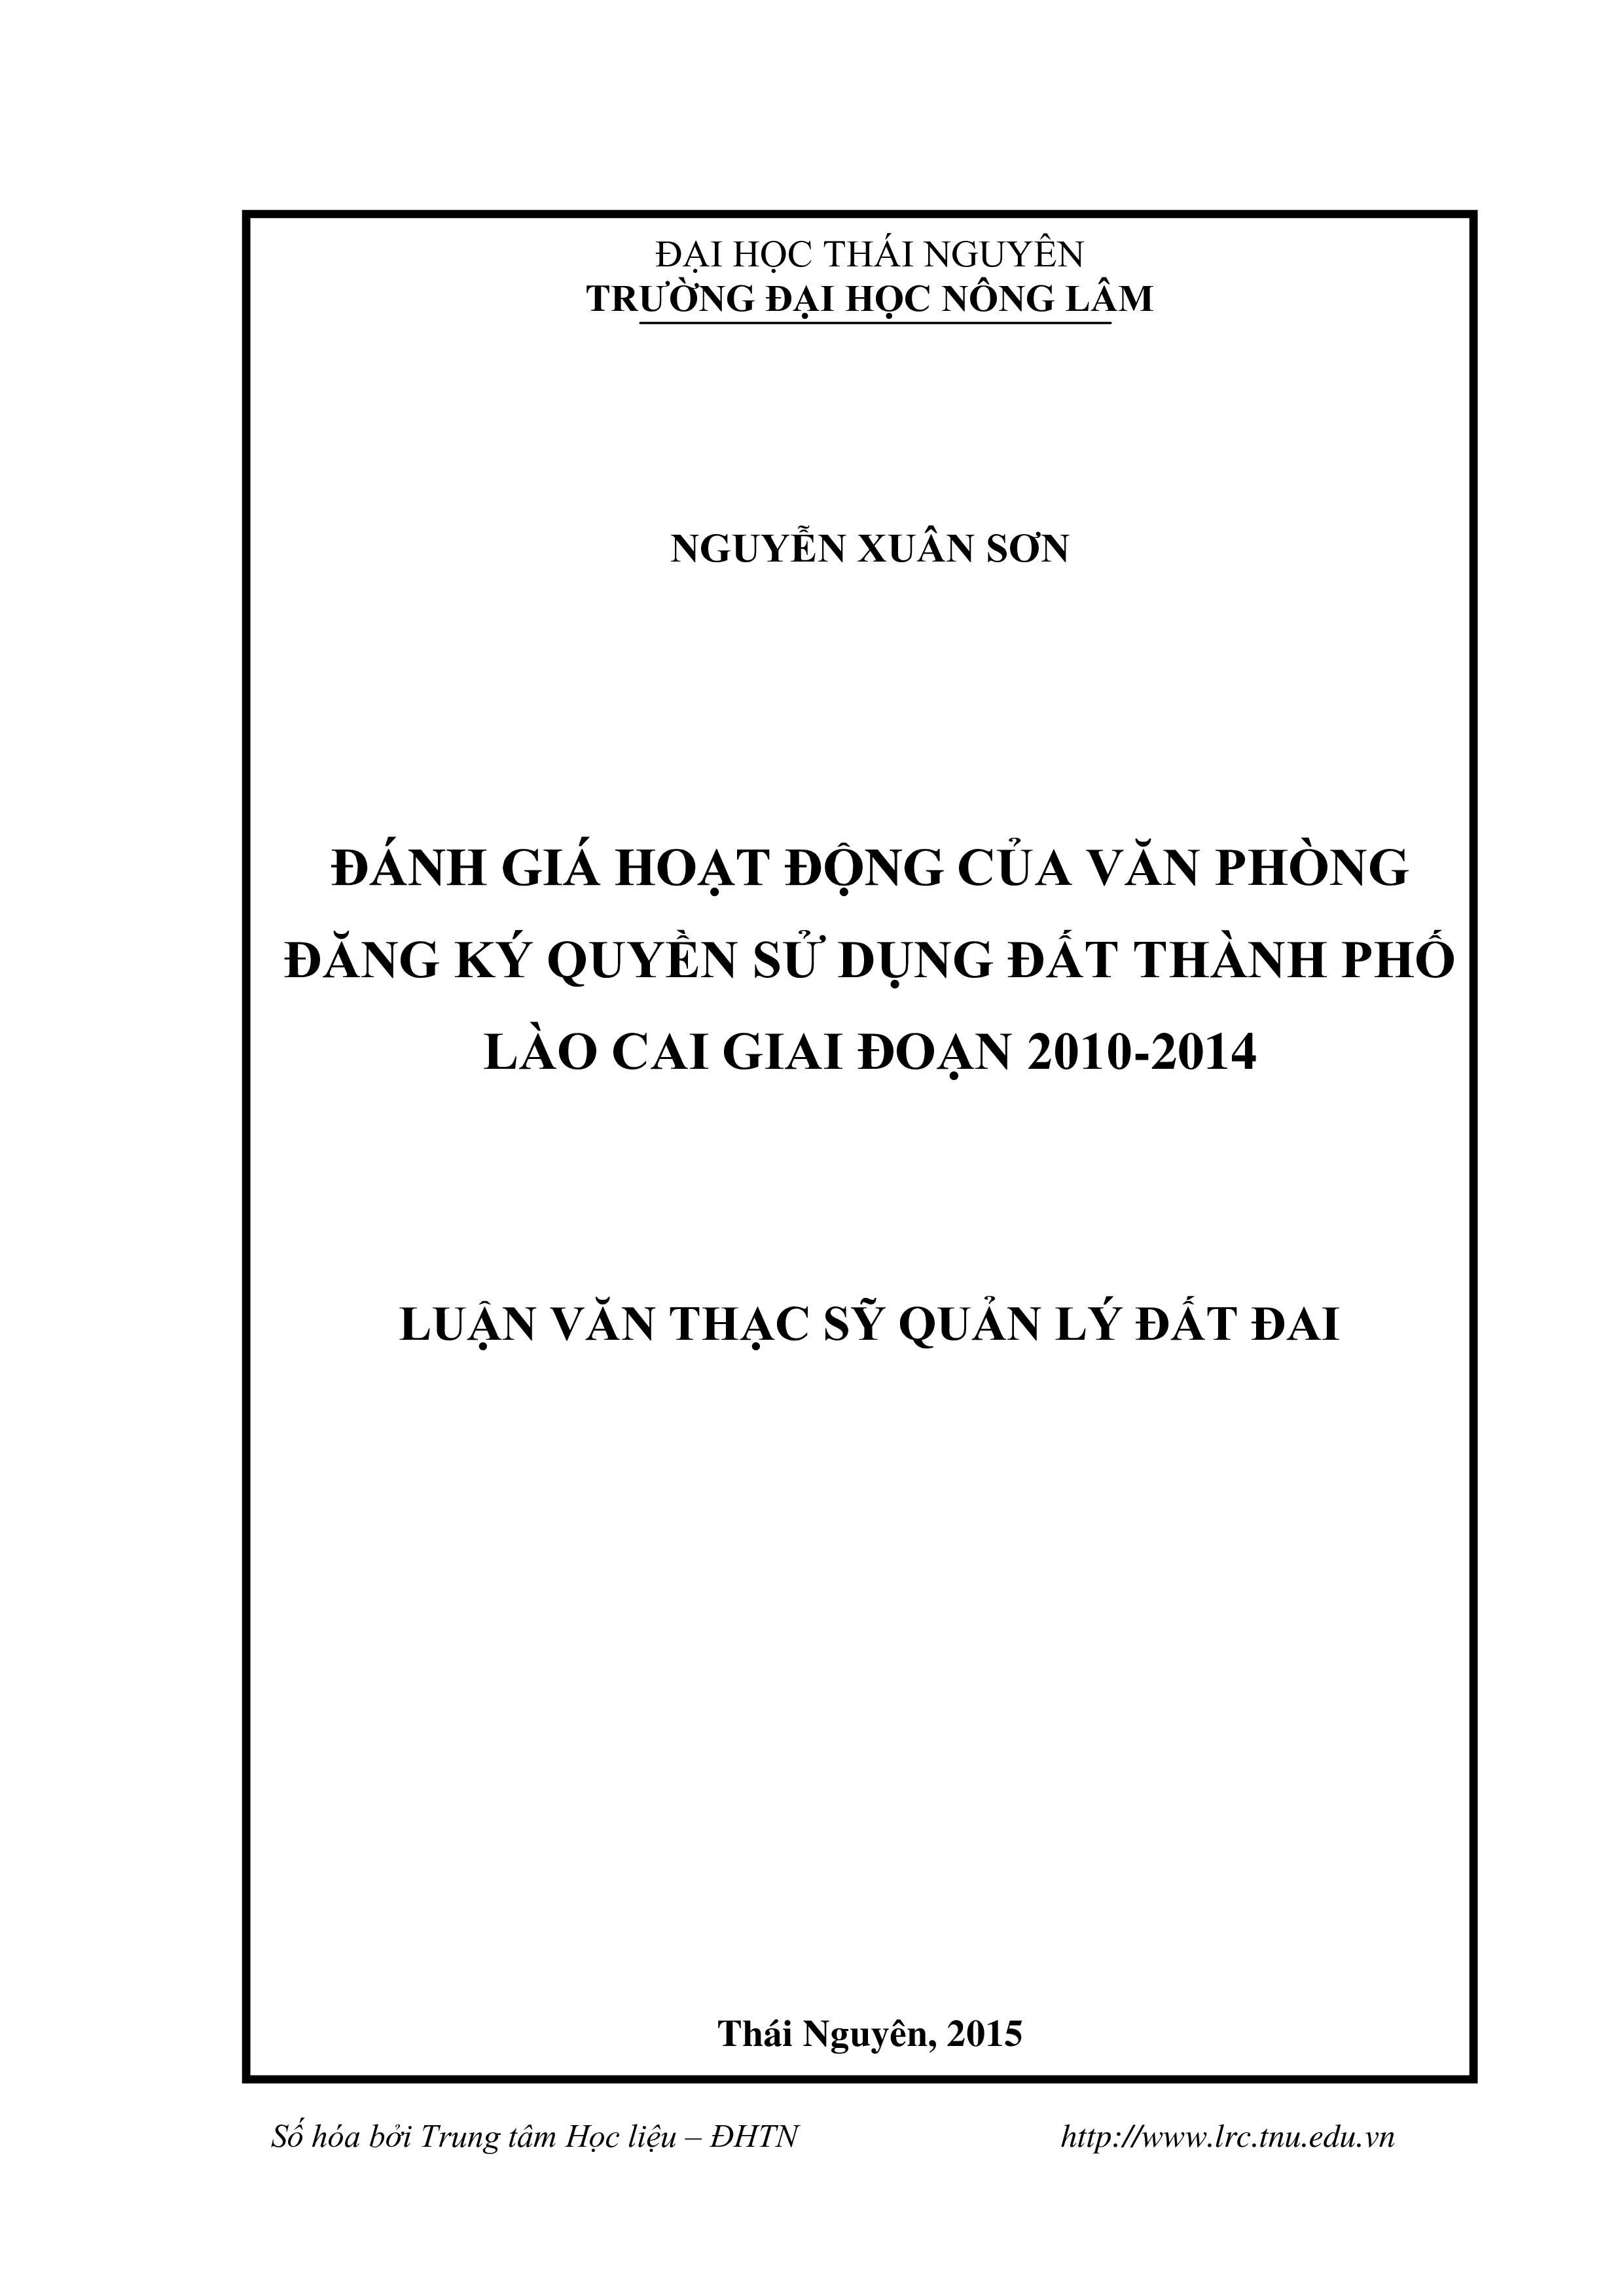 Đánh giá hoạt động của Văn phòng đăng ký quyền sử dụng đất thành phố Lào Cai, tỉnh Lào Cai giai đoạn 2010 - 2014